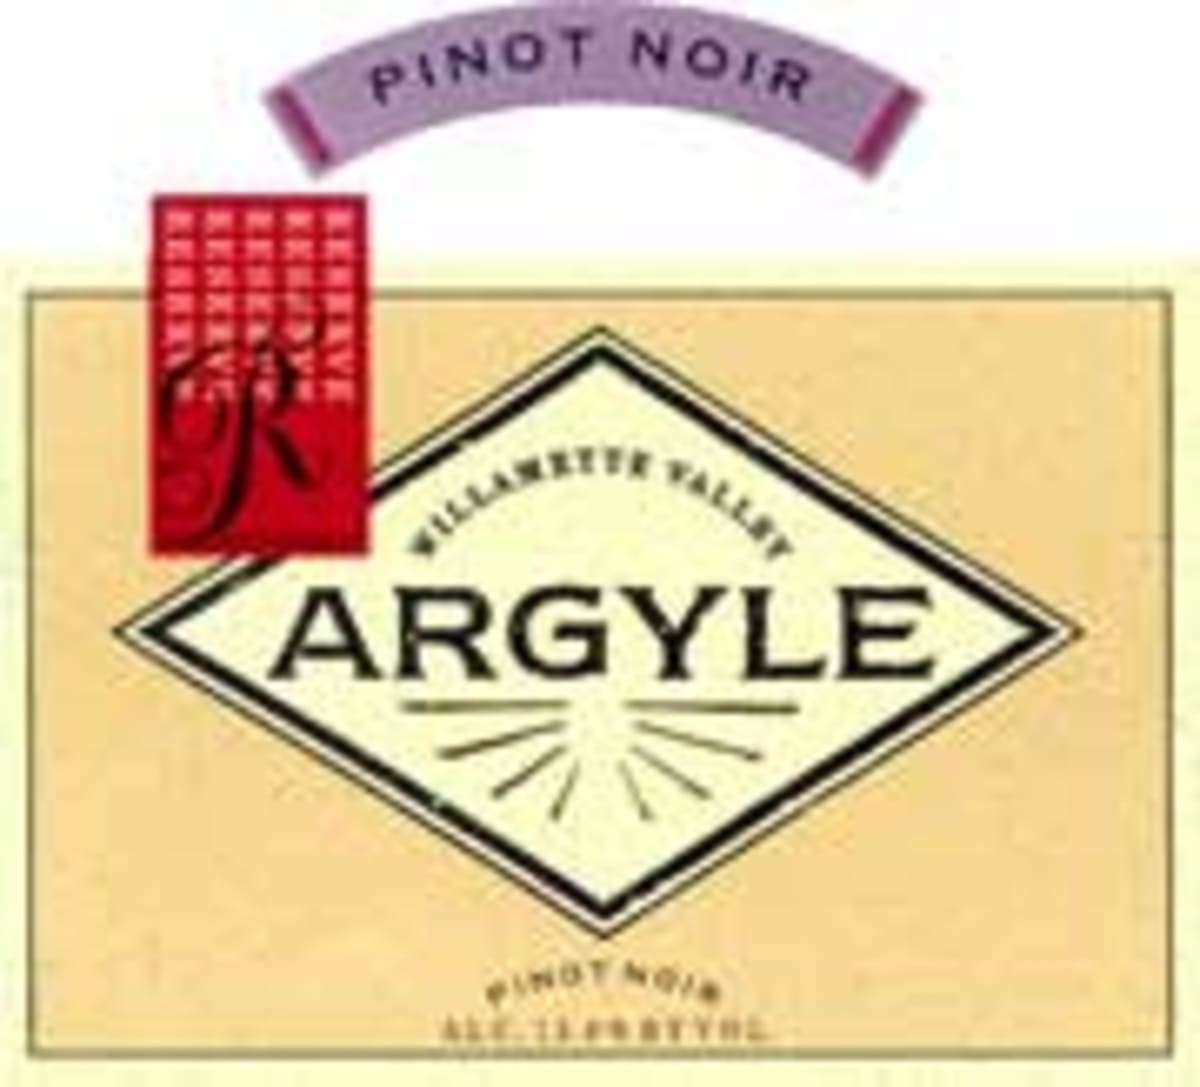 Argyle Reserve Pinot Noir 2000 Front Label